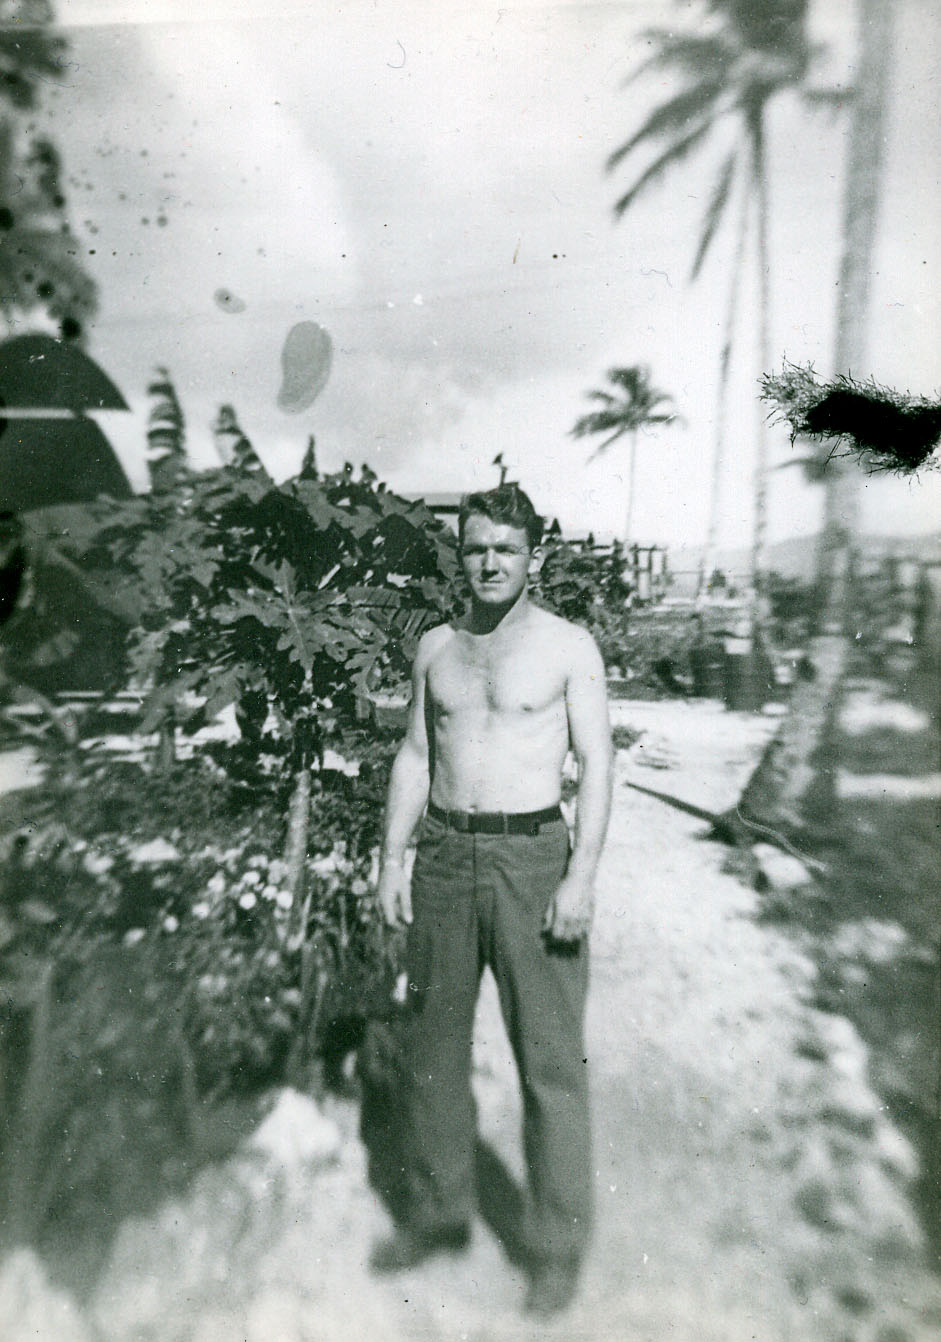 Howard L. Alexander, Sr. in Guam in 1944 or 45